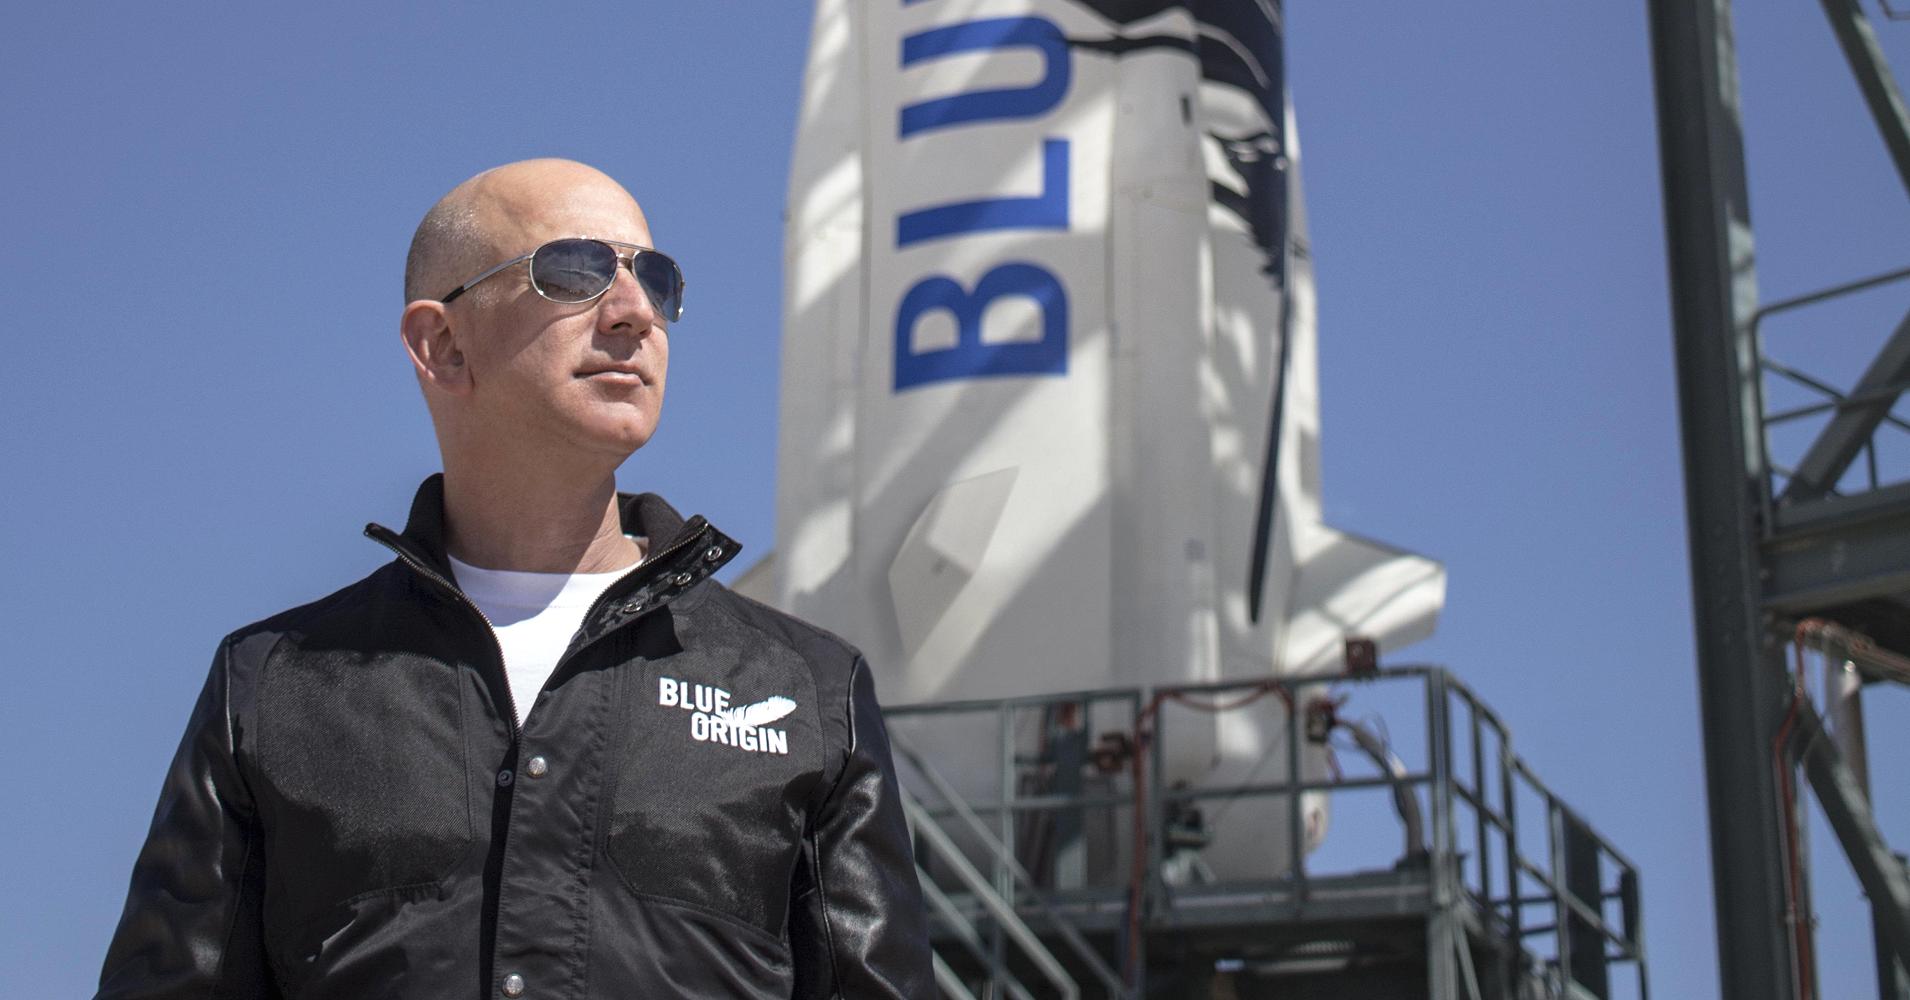 Jeff Bezos e Blue Origin alla conquista della Luna